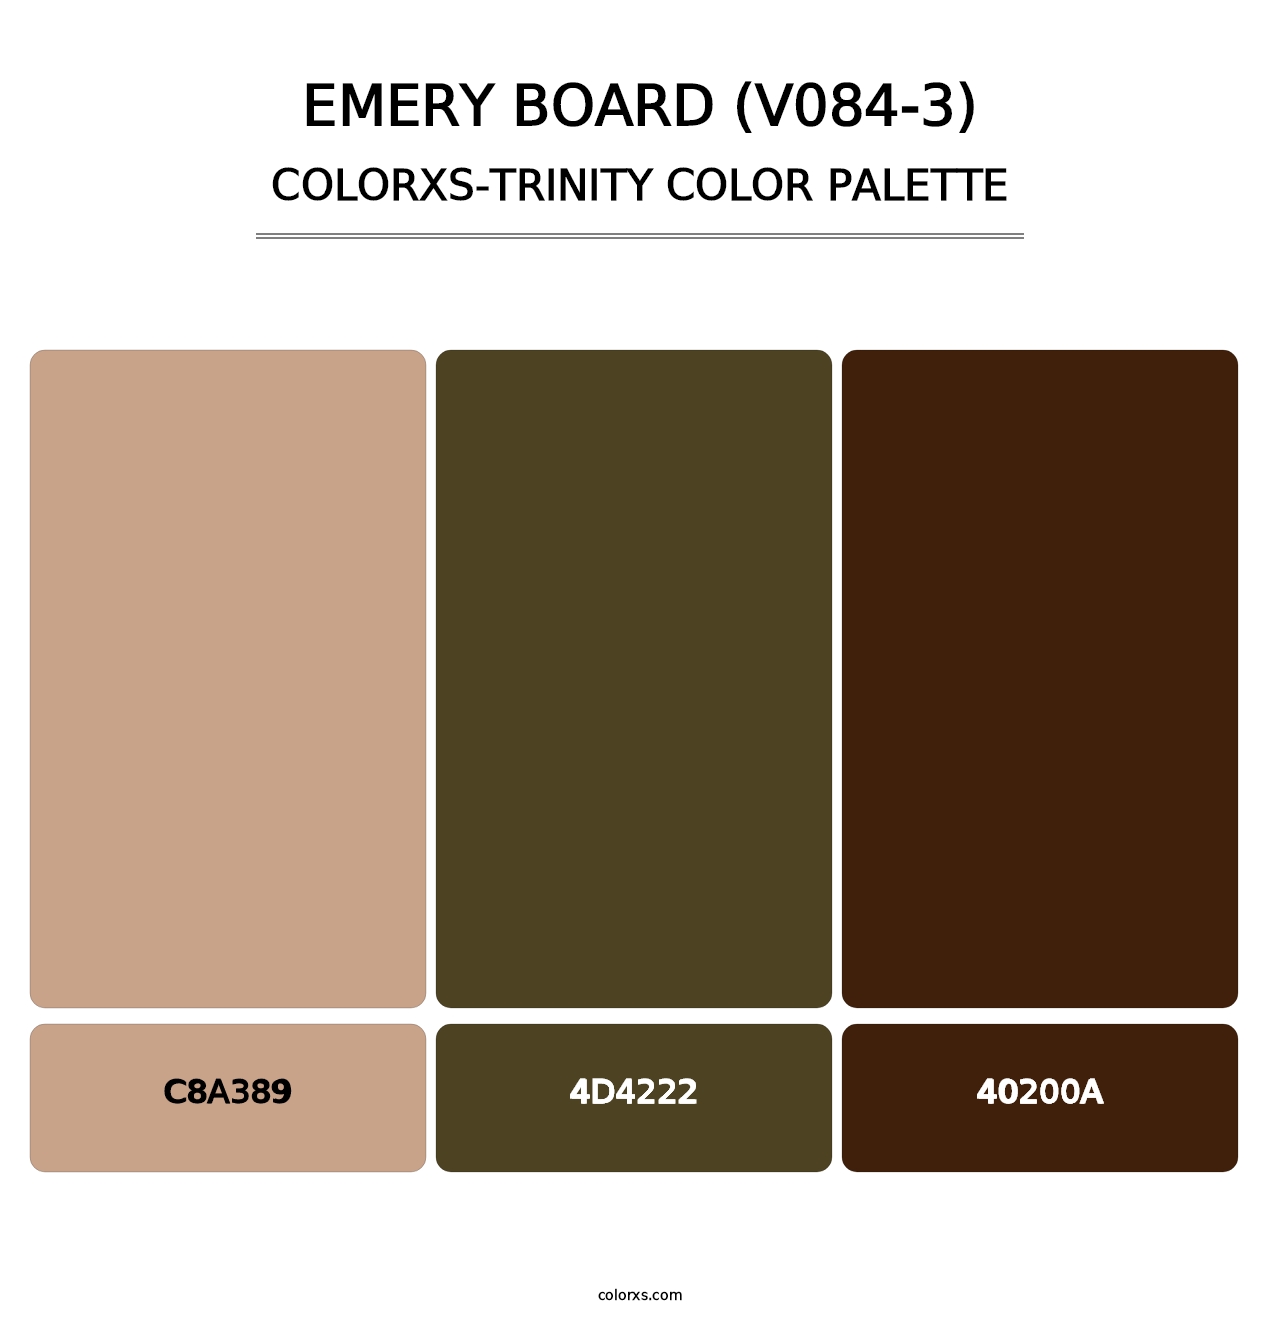 Emery Board (V084-3) - Colorxs Trinity Palette